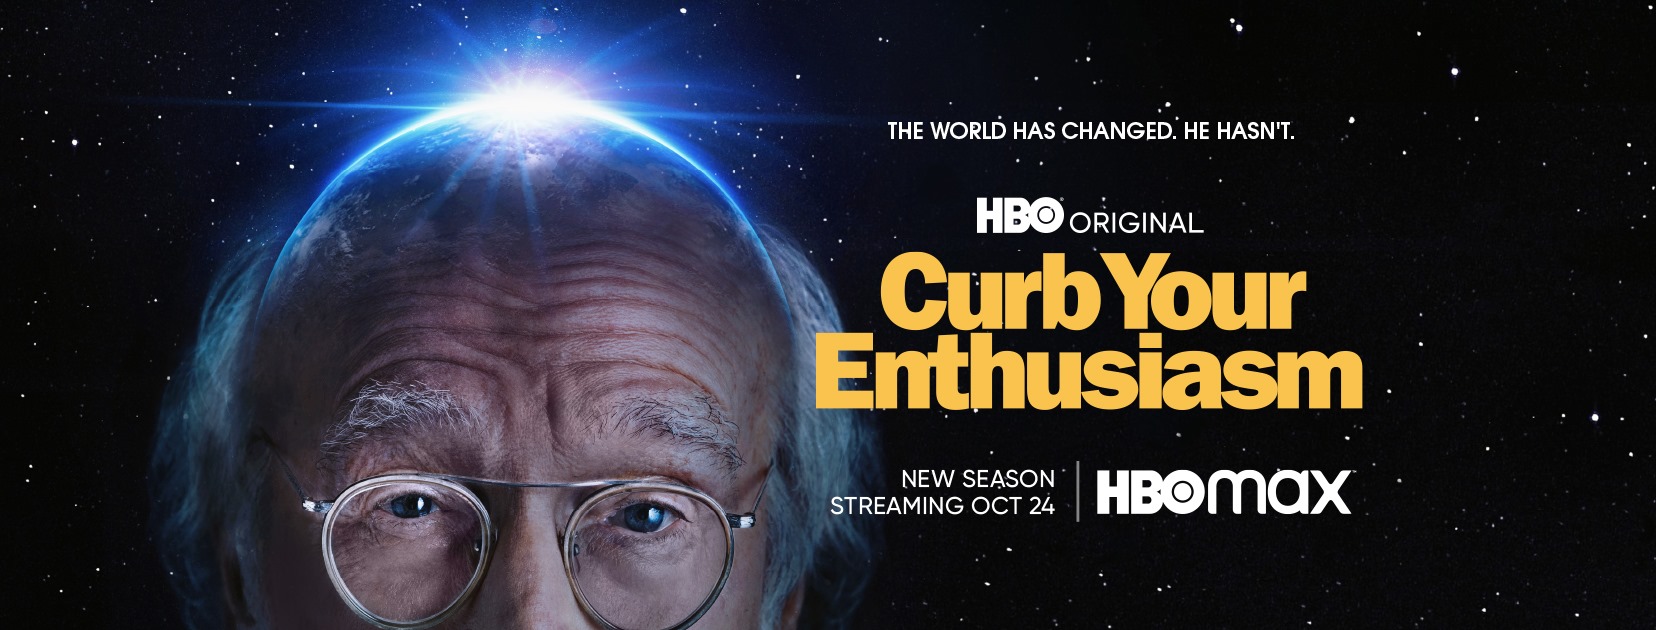 curb your enthusiasm season 7 trailer